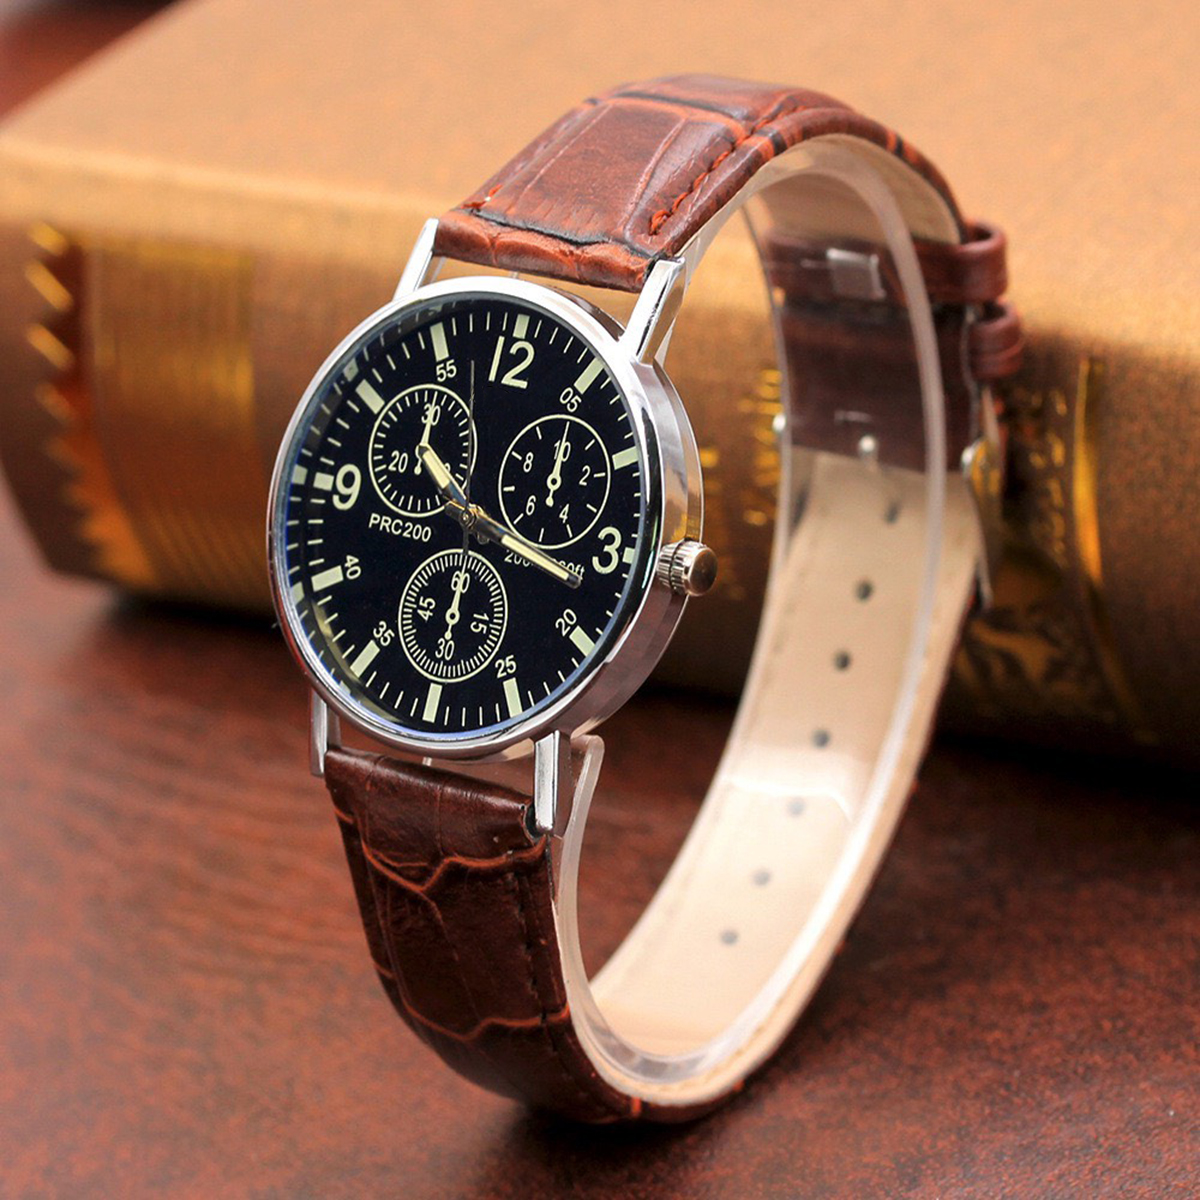 Đồng hồ nam thời trang cao cấp dây da bền bỉ mặt kính tròn to ZO97